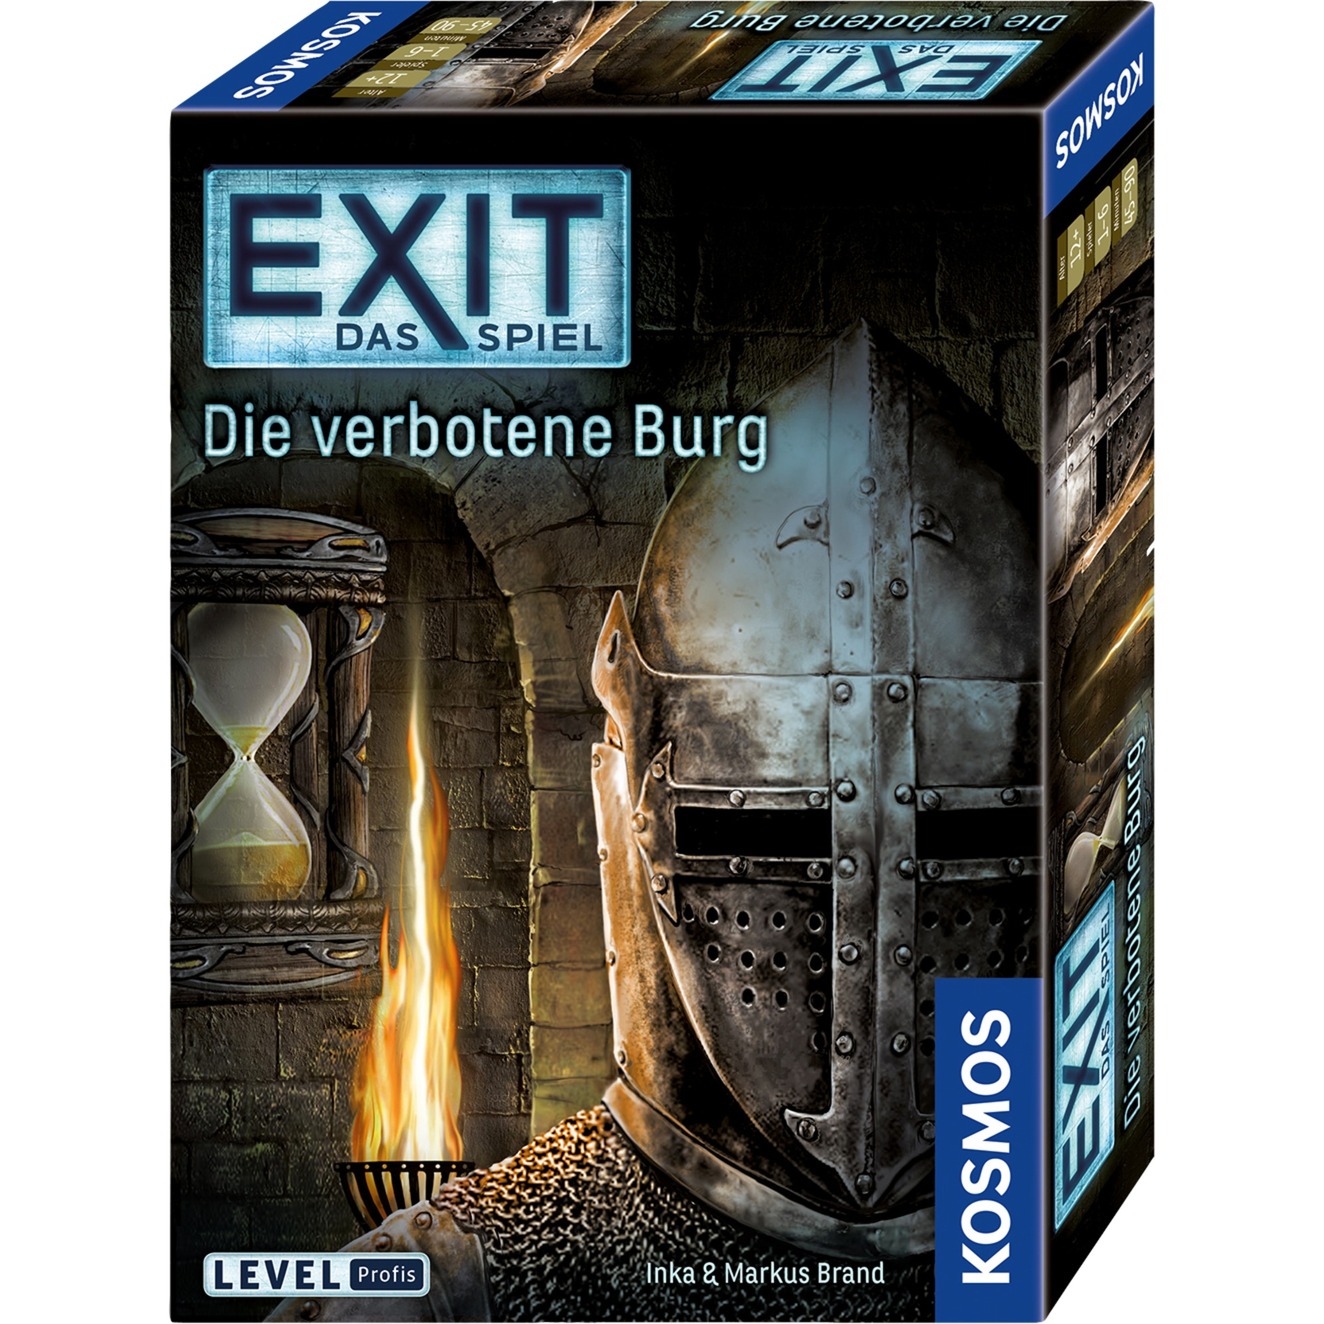 Image of Alternate - EXIT - Das Spiel - Die verbotene Burg, Partyspiel online einkaufen bei Alternate